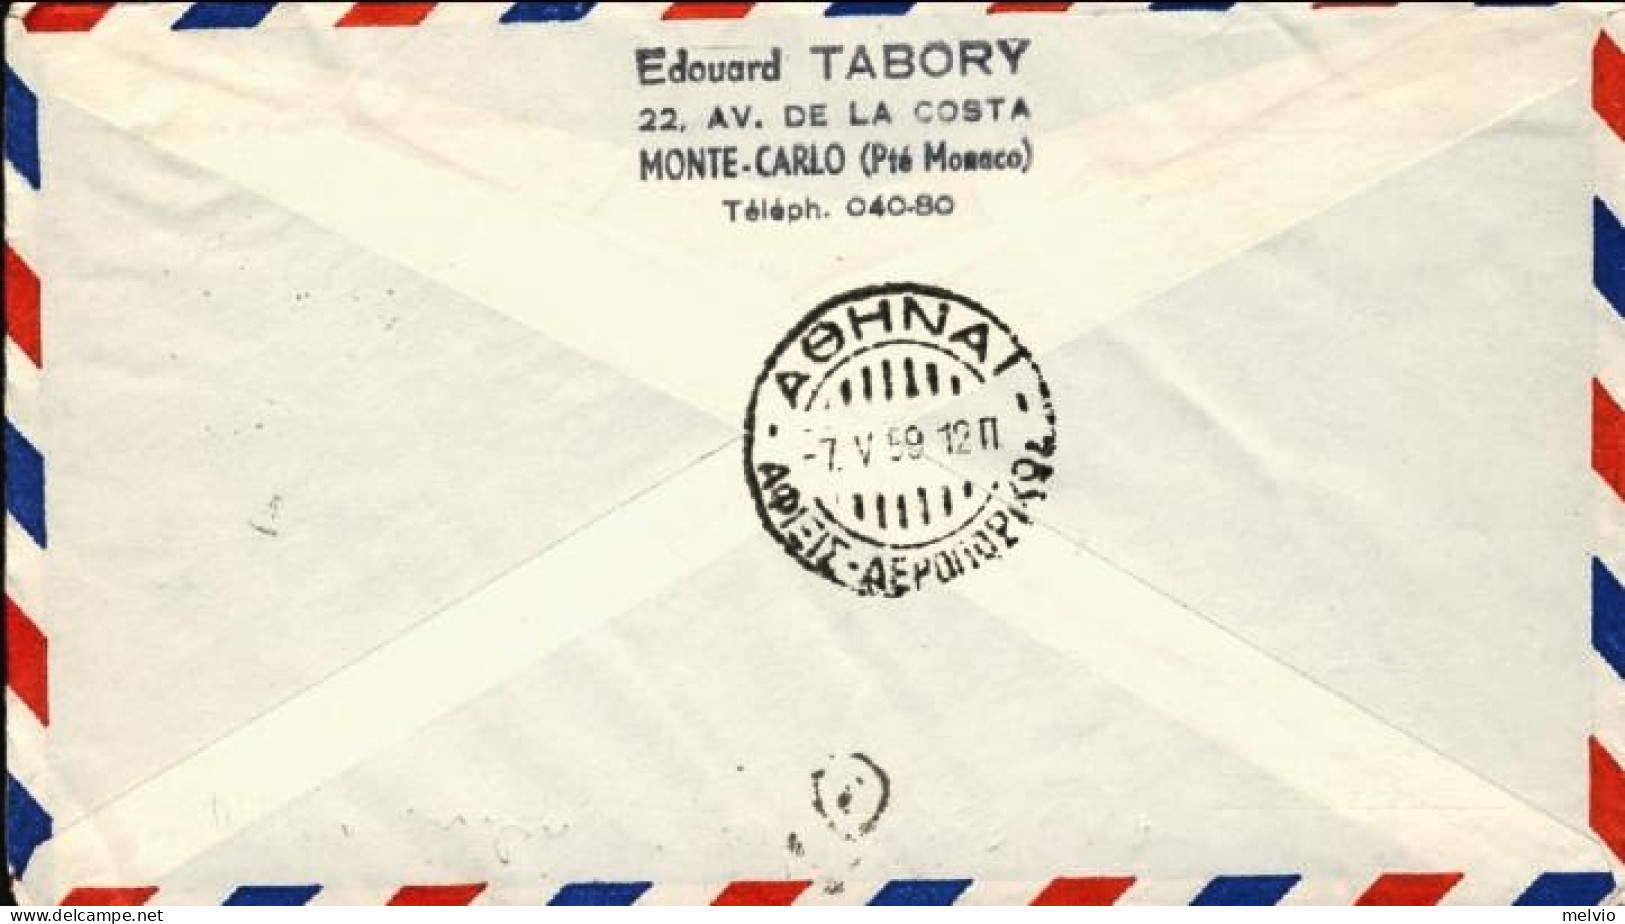 1959-Monaco Bollo Viola I^volo Air France Caravelle Montecarlo-Atene Del 6 Maggi - Storia Postale